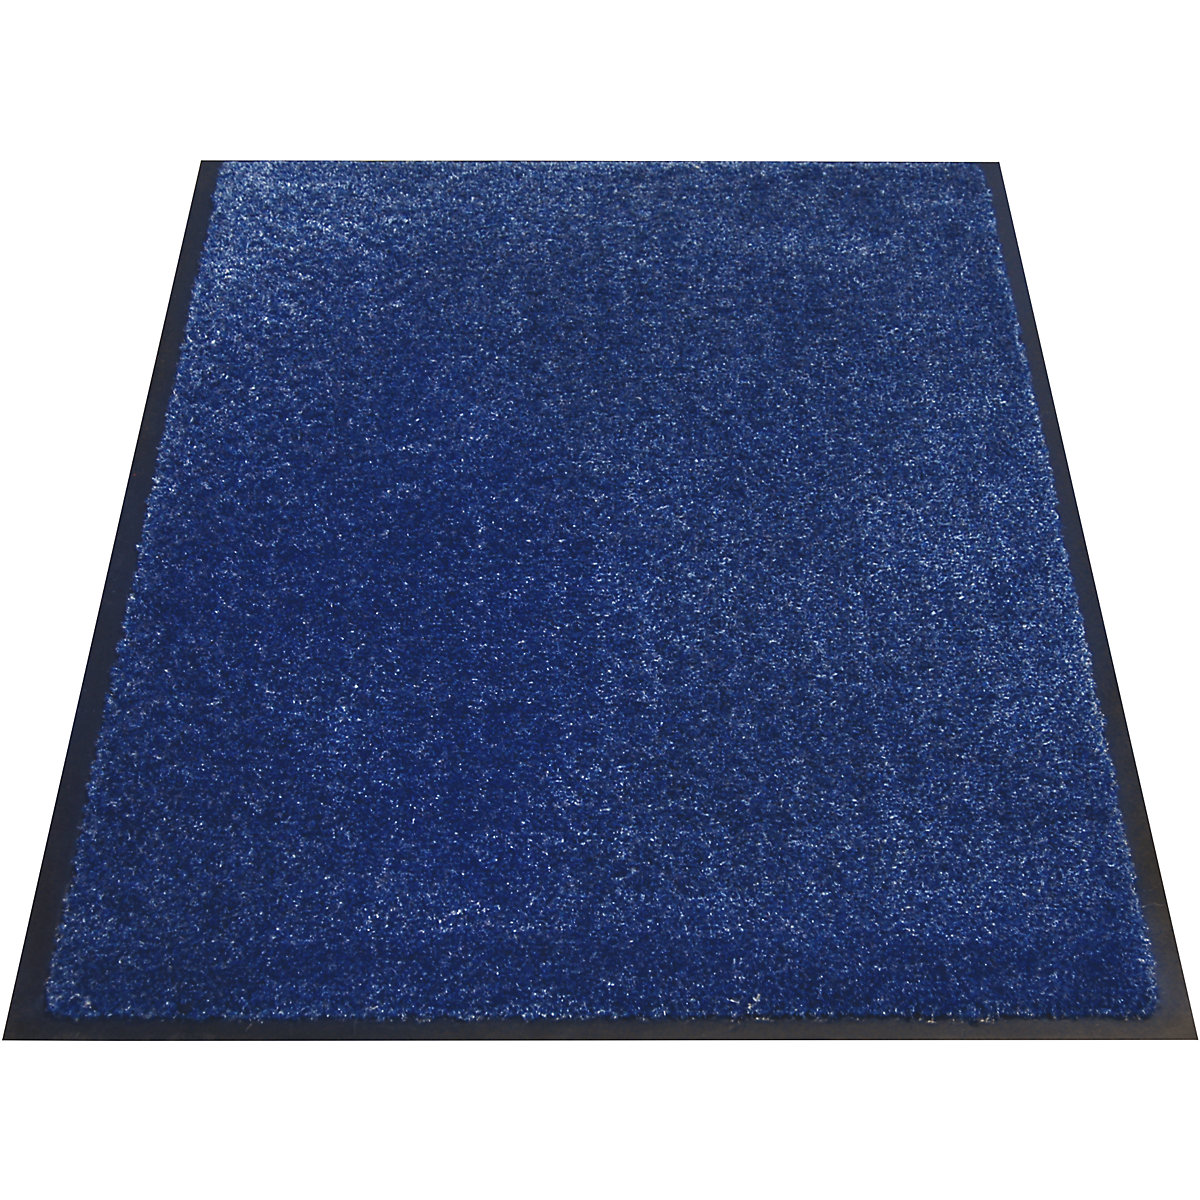 Mata wychwytująca brud EAZYCARE AQUA, dł. x szer. 900 x 600 mm, niebieski-7